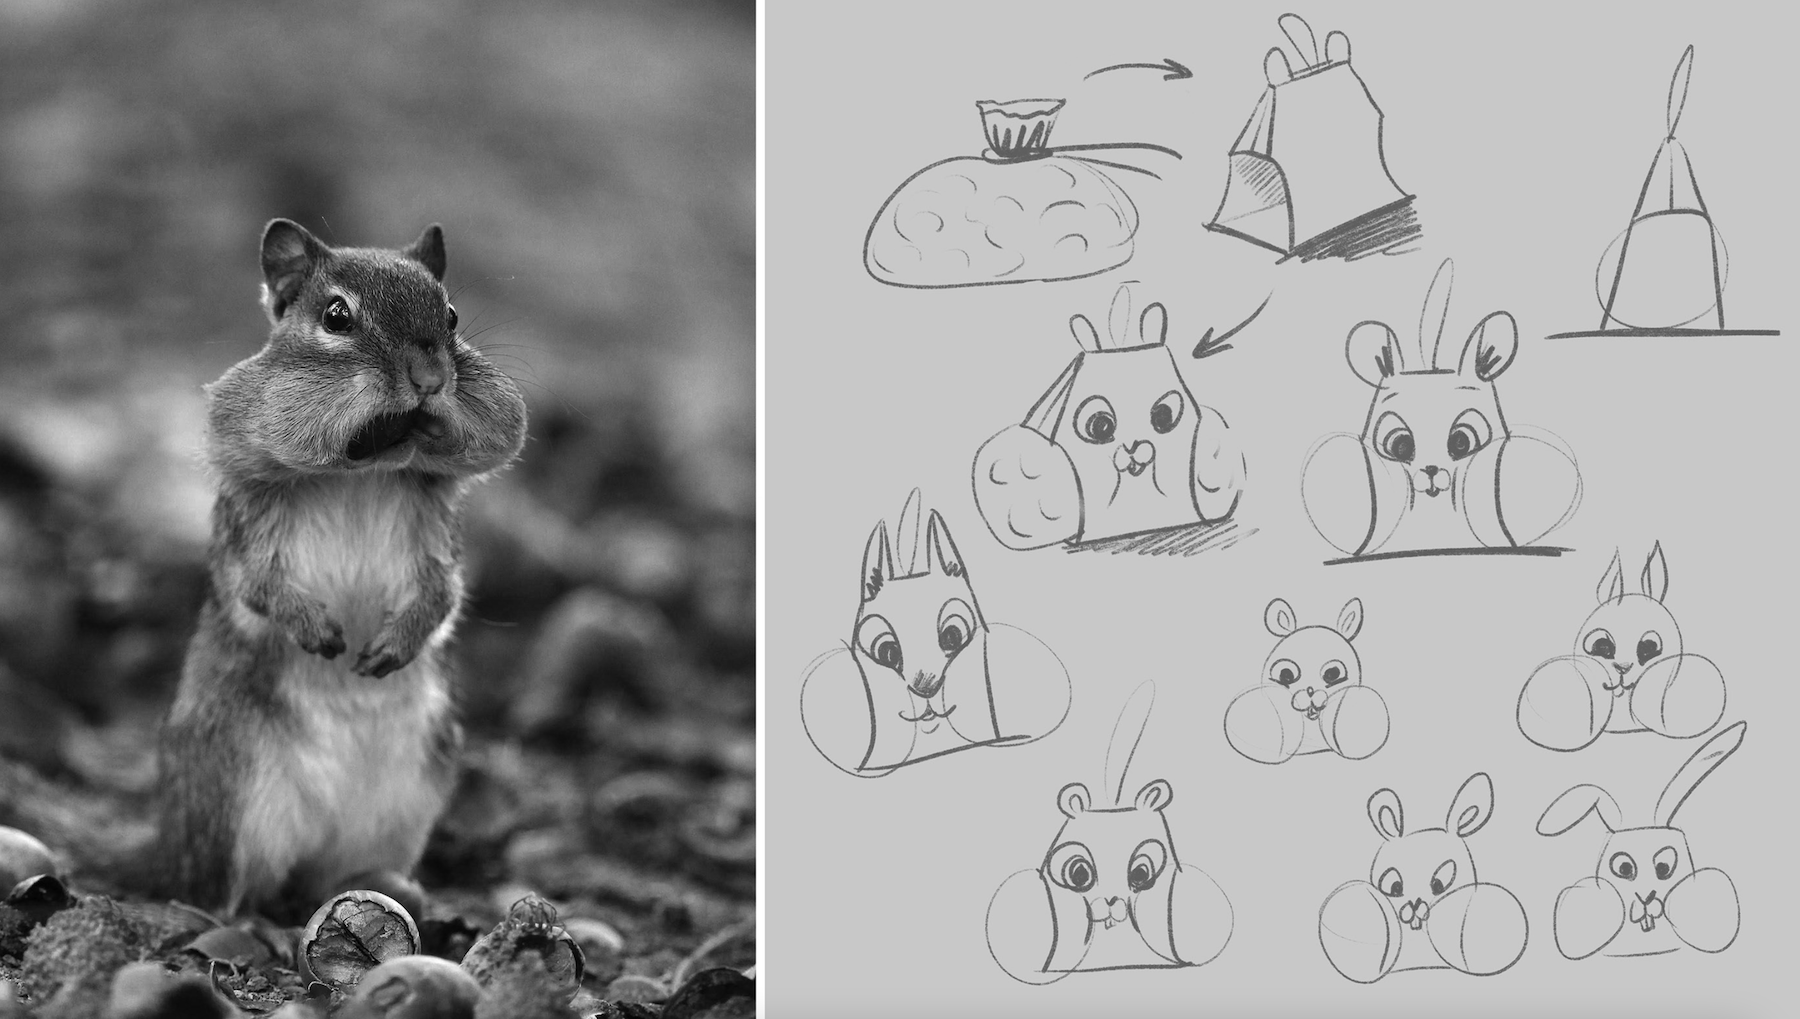 Un adorable packaging en forme d'écureuil pour vendre des noisettes